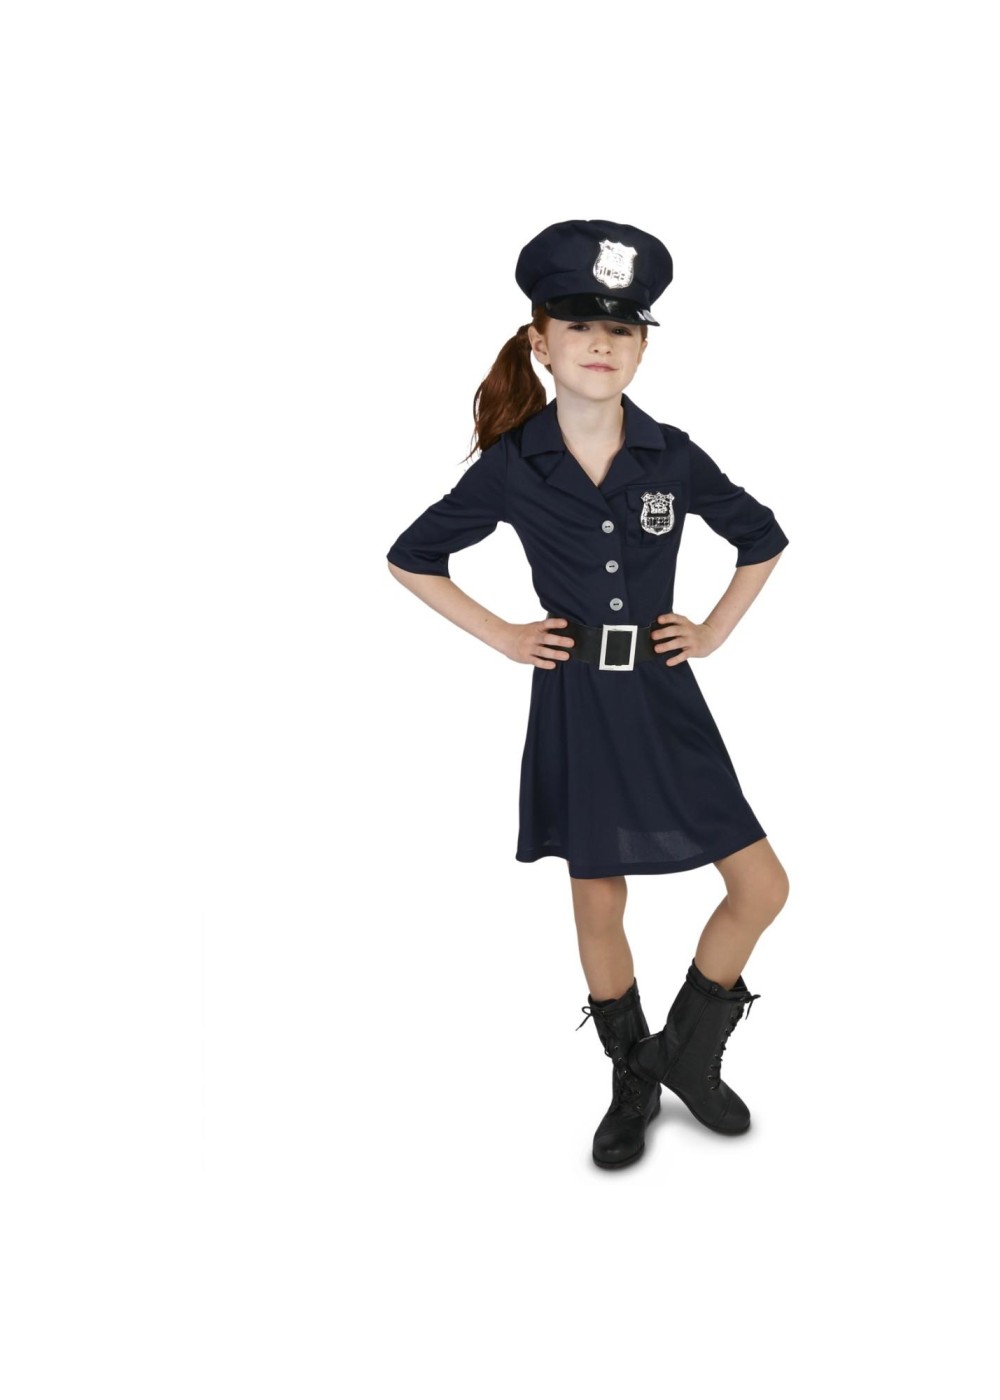 Kids Girls Police Costume